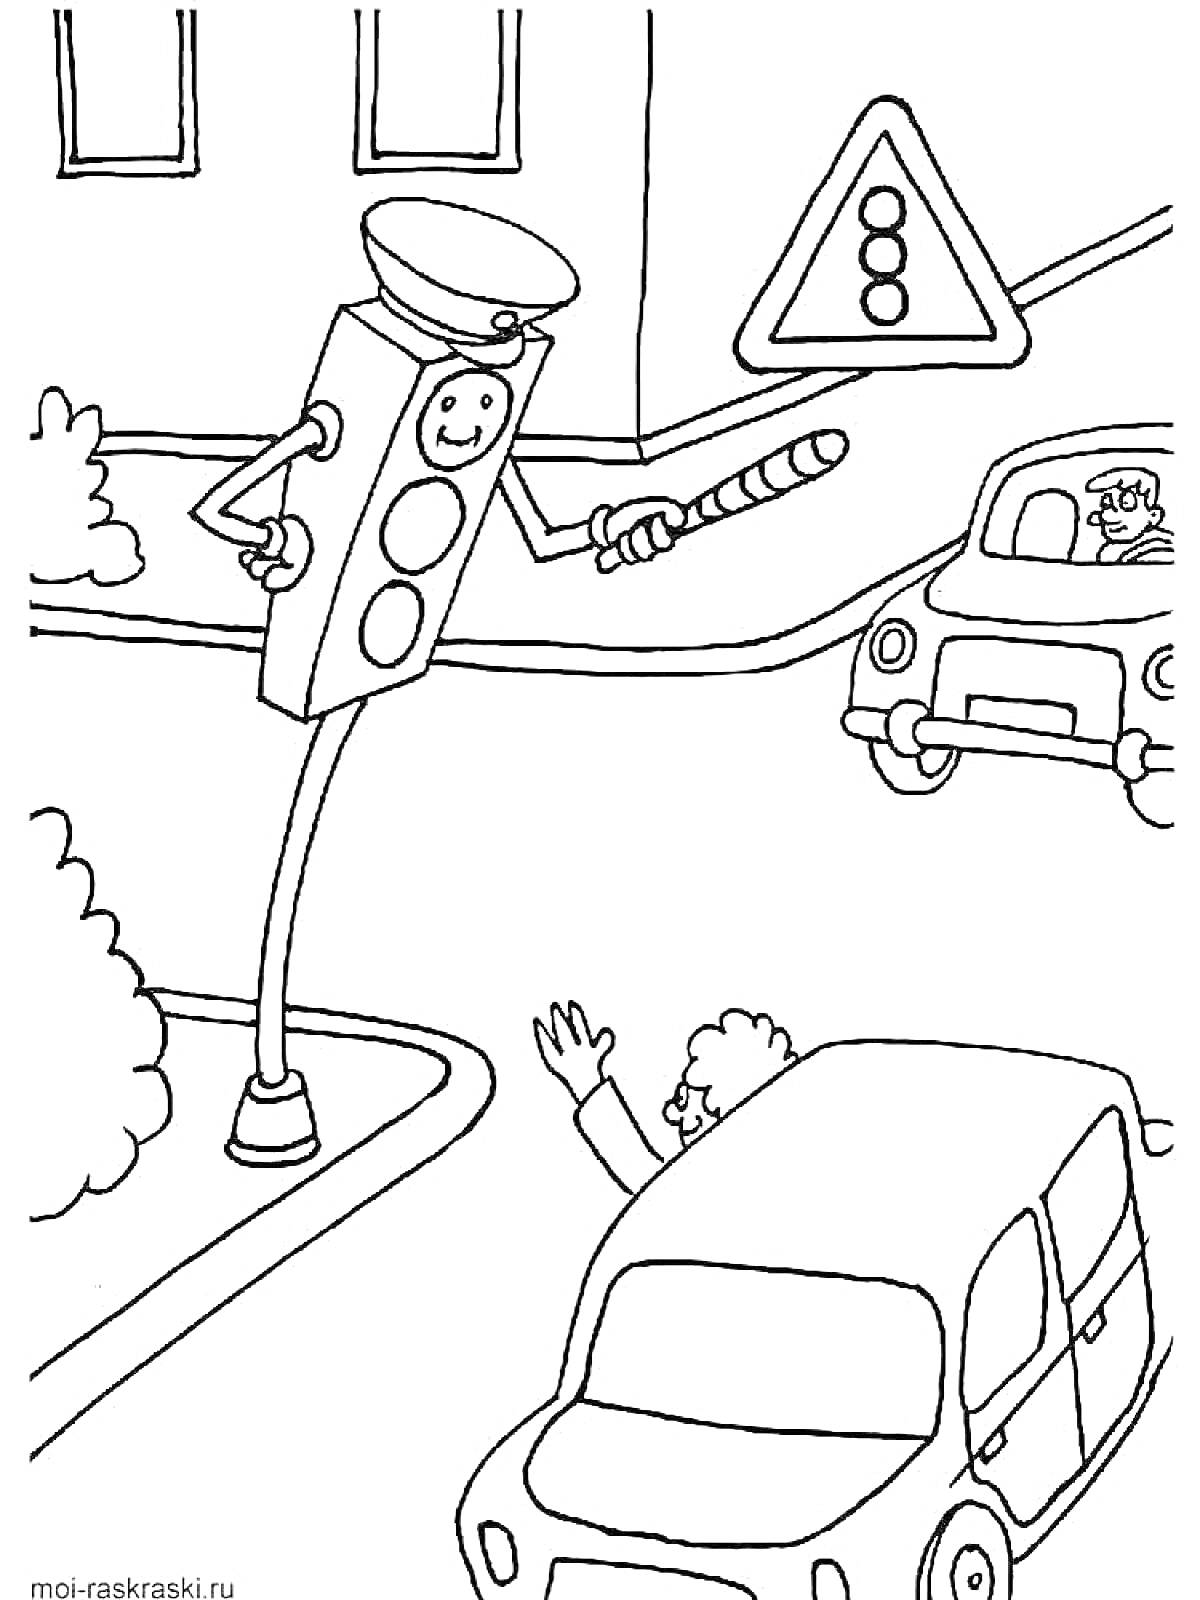 Раскраска Светофор-полицейский регулирует движение рядом с дорожным знаком и машинами